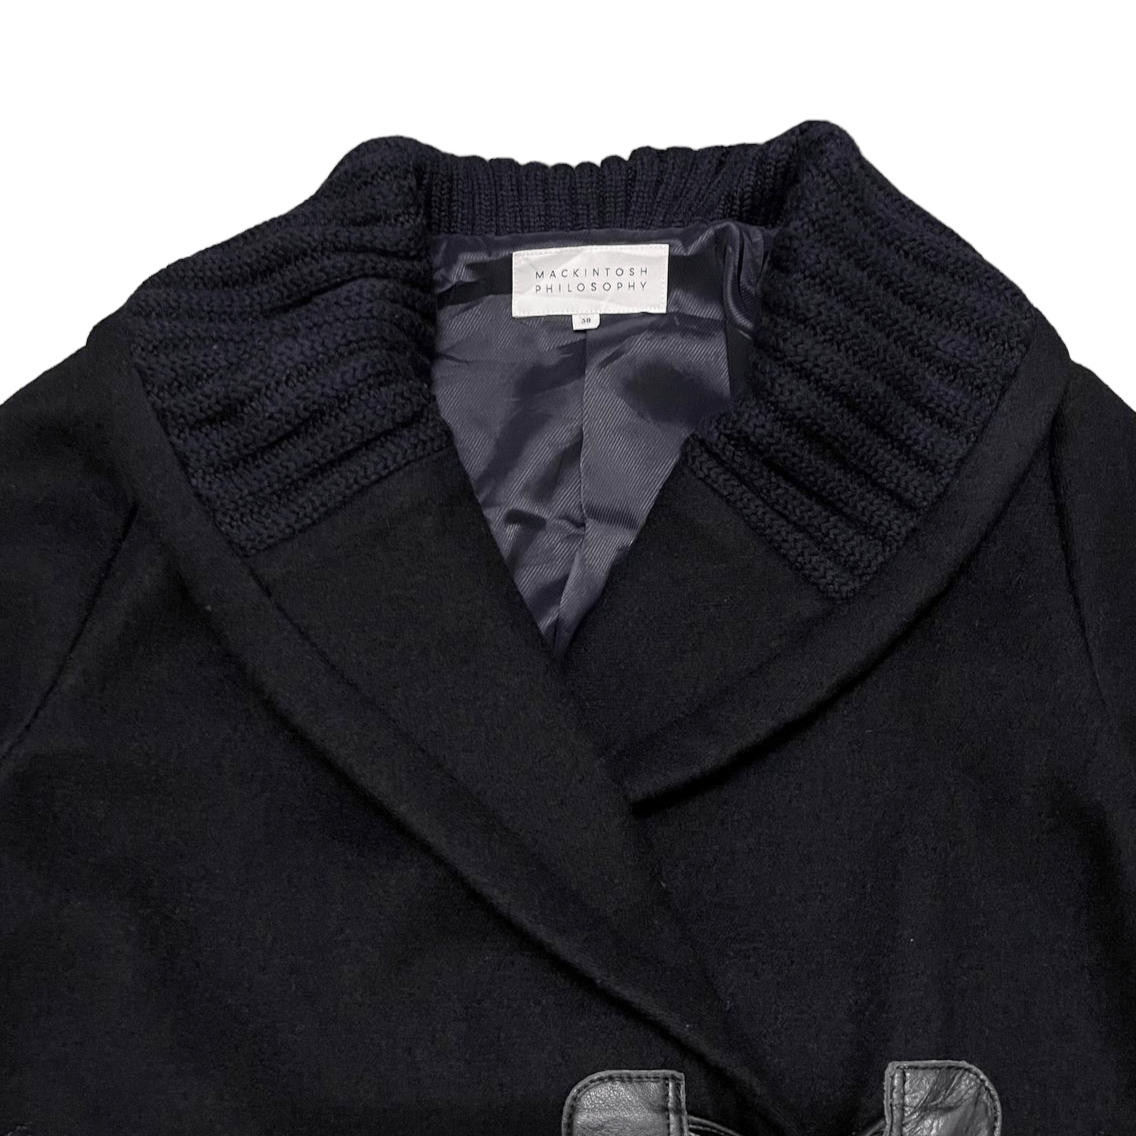 Mackintosh Philosophy Wool Coat - 3